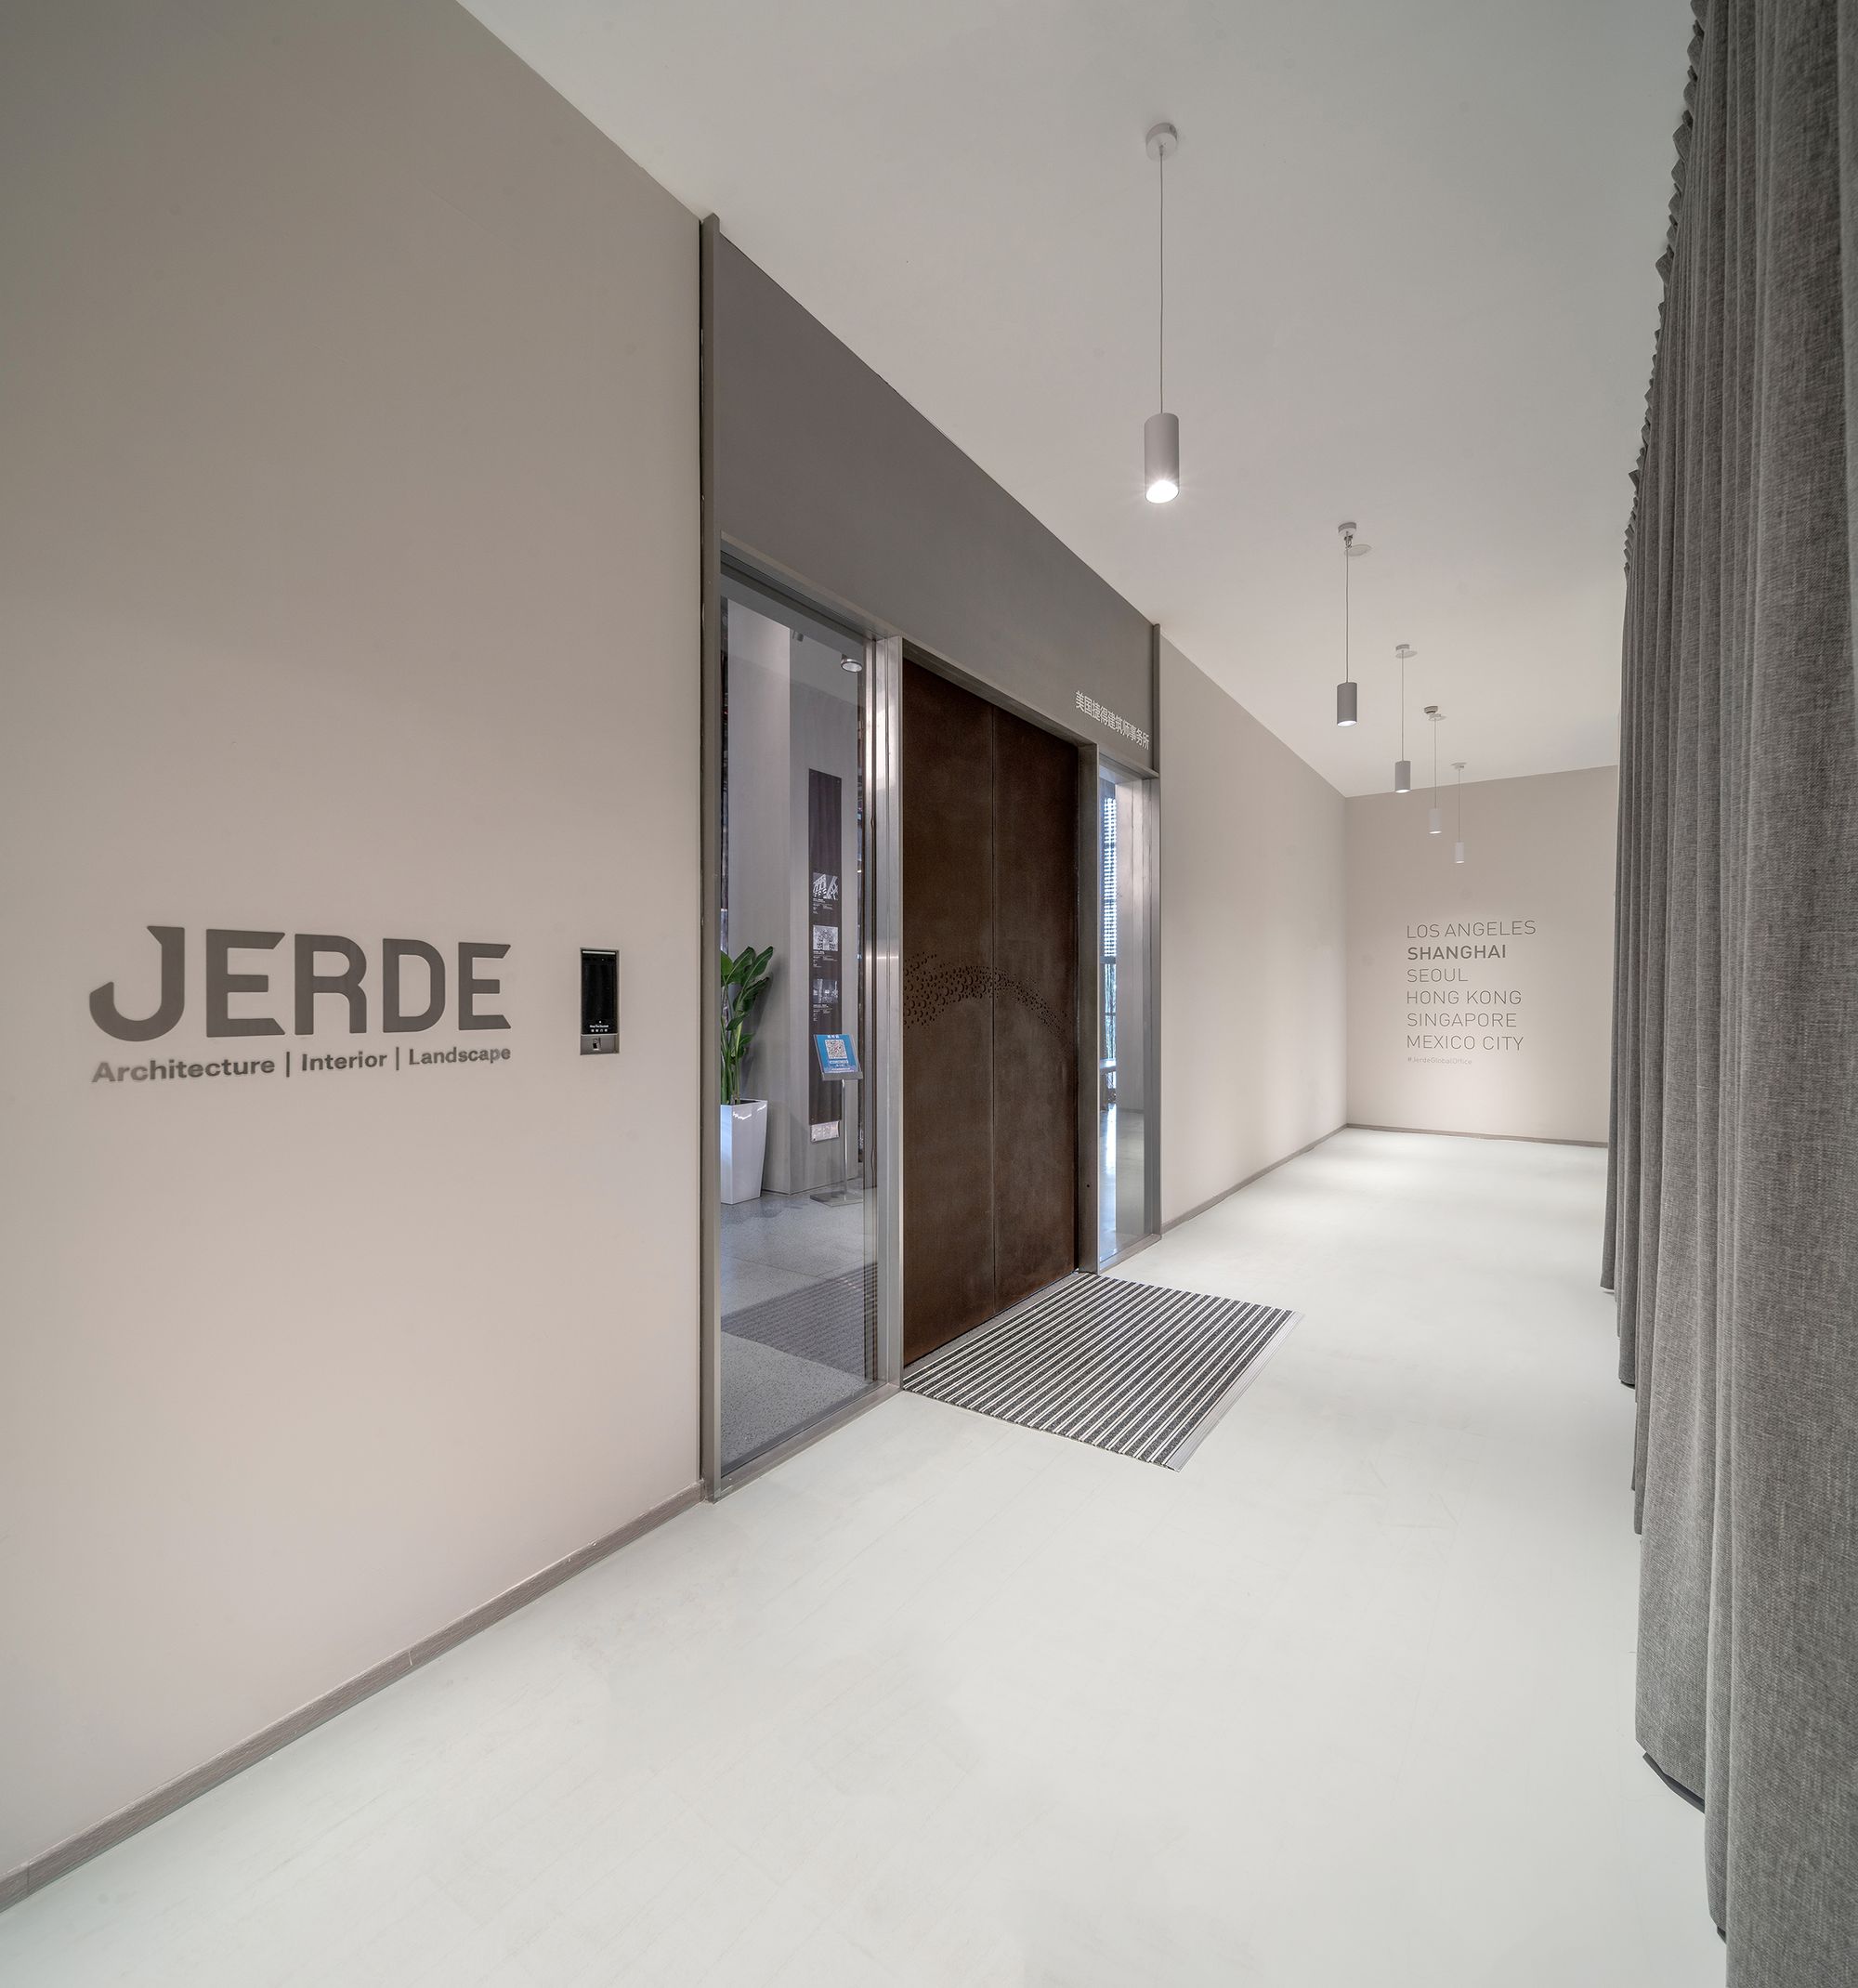 JERDE上海办事处|ART-Arrakis | 建筑室内设计的创新与灵感